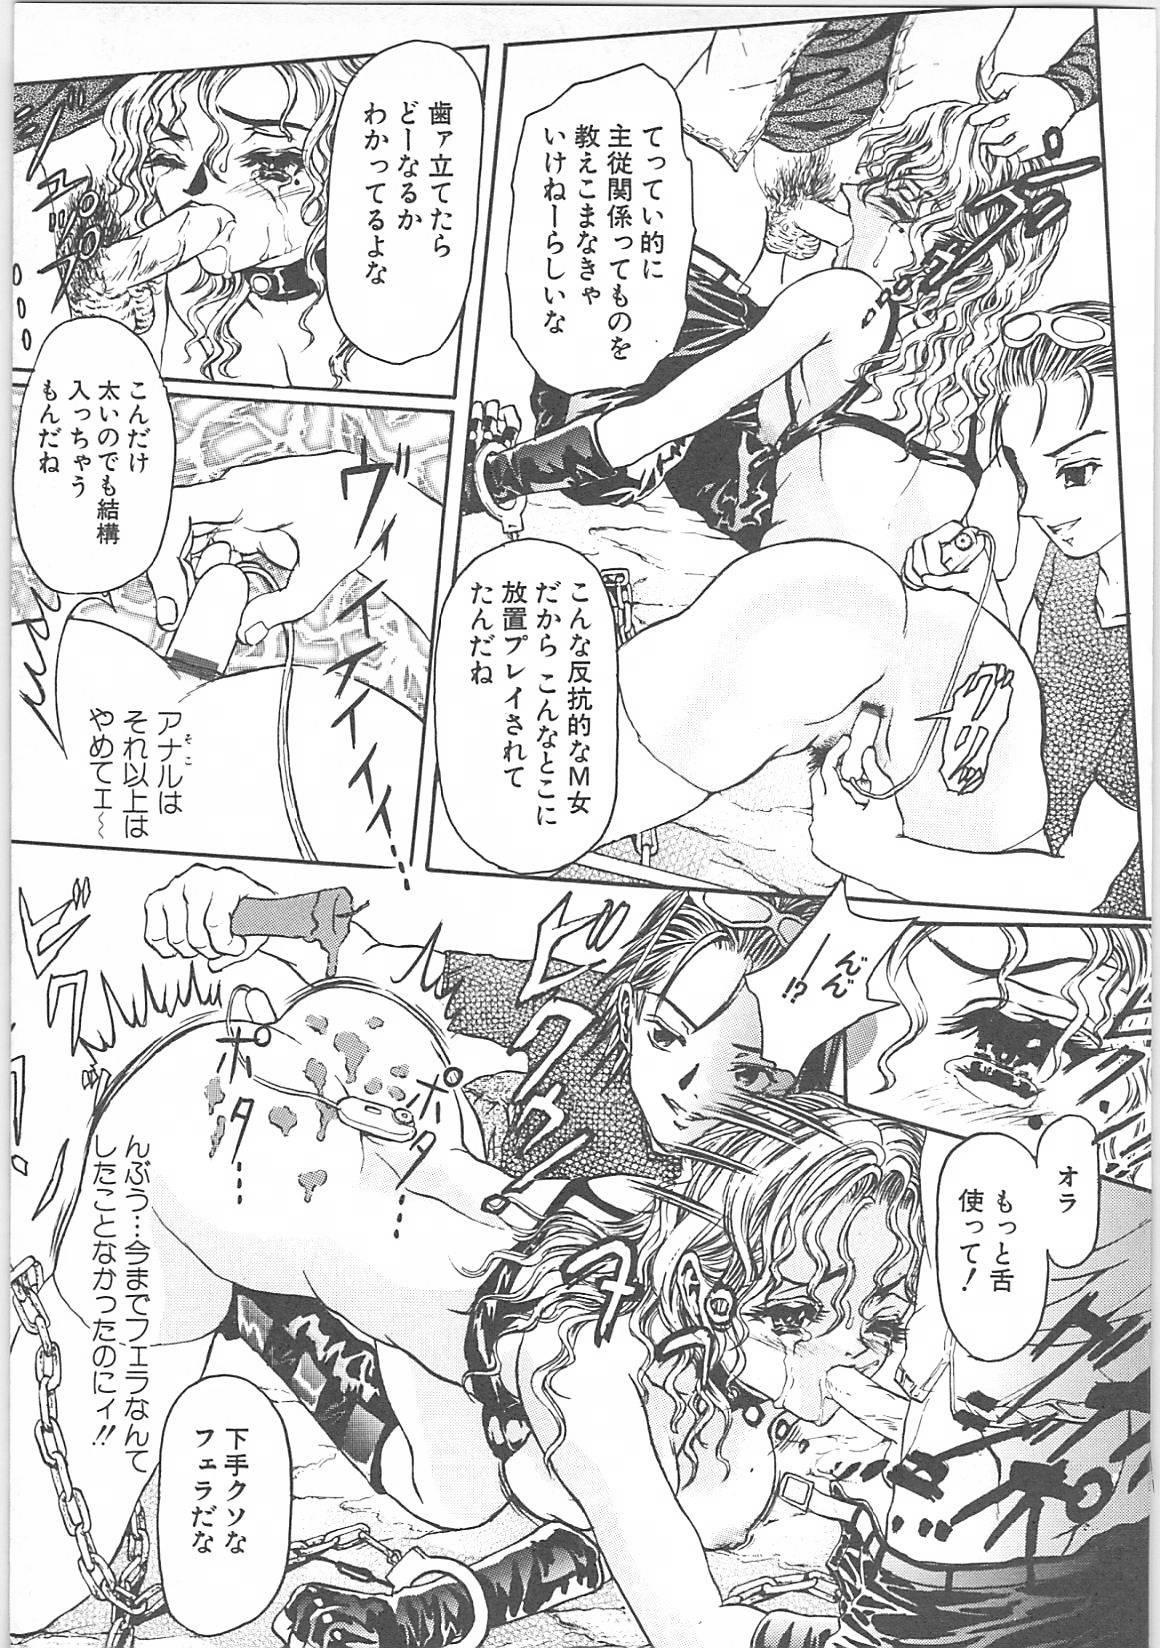 [TENMA FEMIO] Tsumi to batsu (crime and  punishment) page 19 full